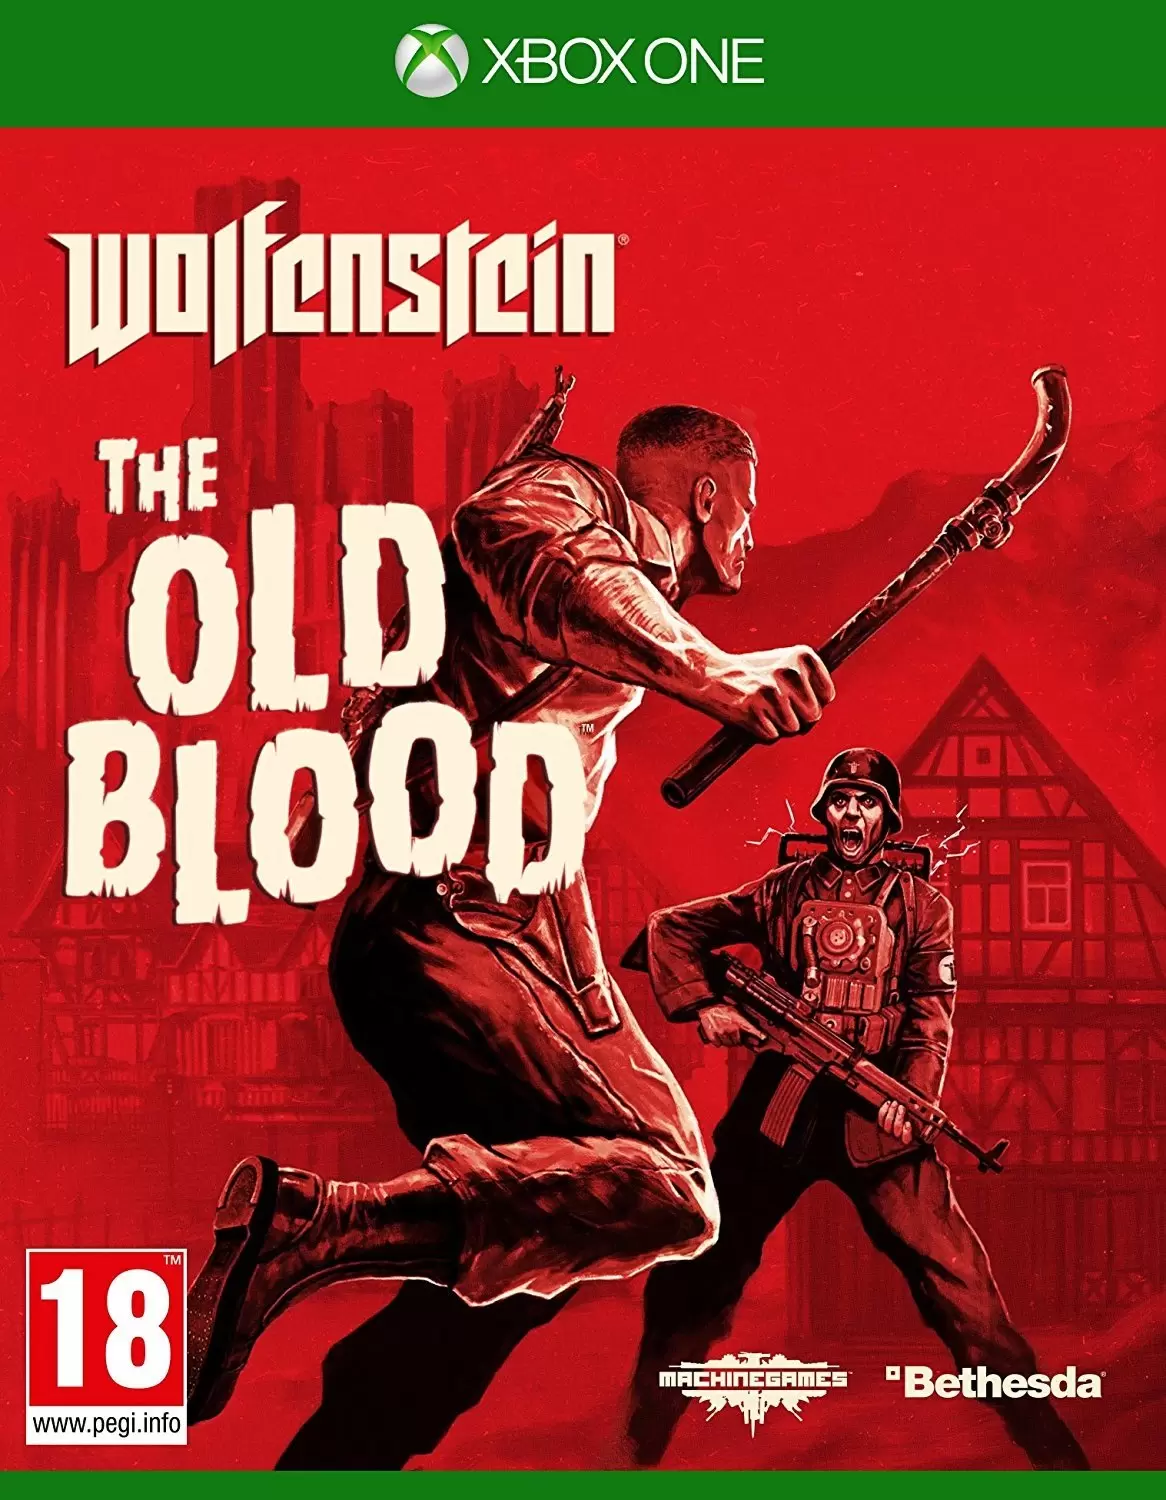 XBOX One Games - Wolfenstein: The Old Blood